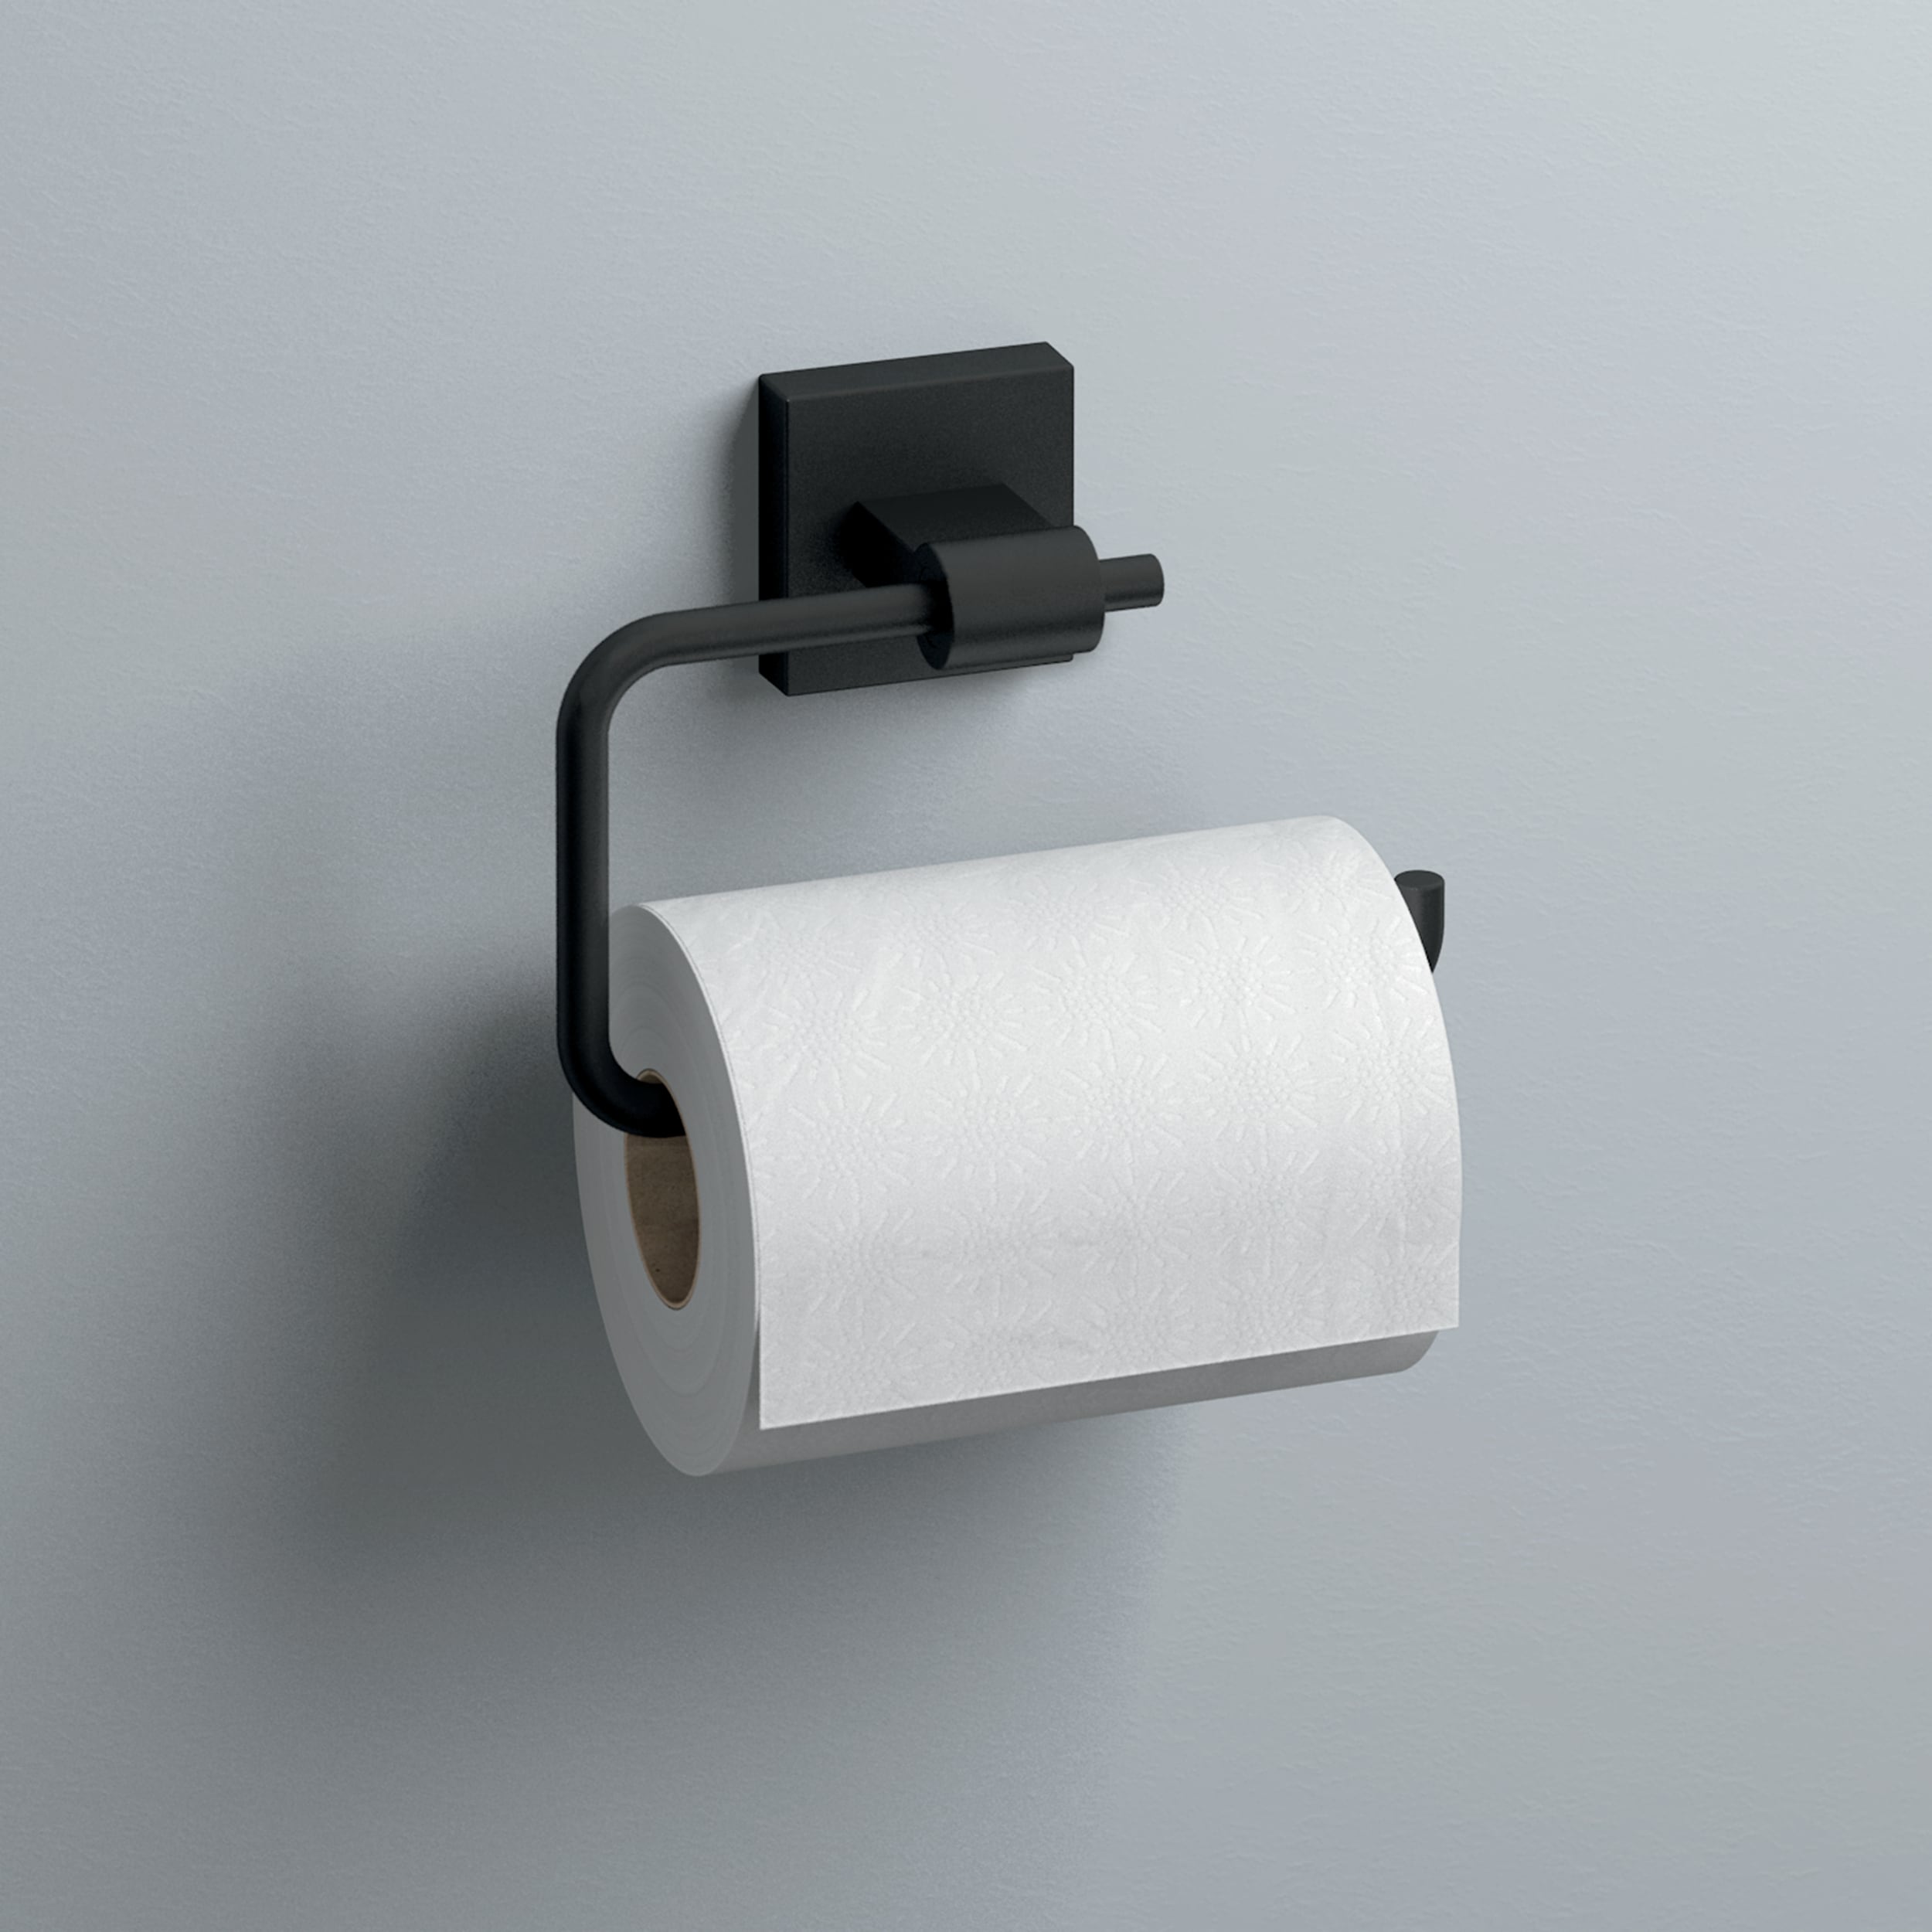 Brass Toilet Paper Holder –